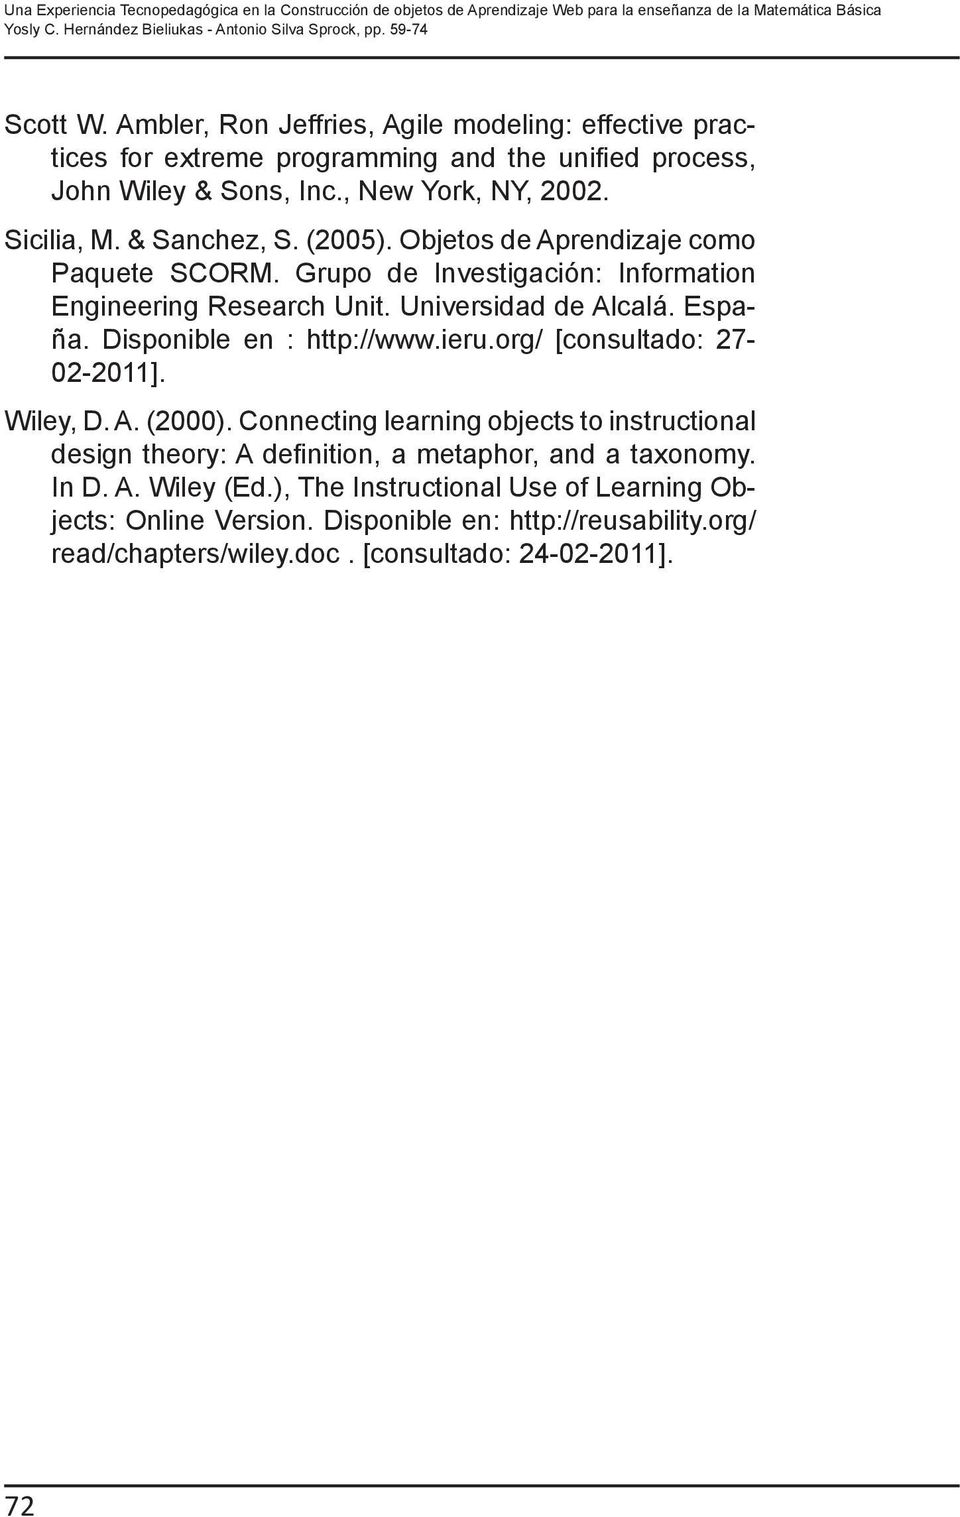 Objetos de Aprendizaje como Paquete SCORM. Grupo de Investigación: Information Engineering Research Unit. Universidad de Alcalá. España. Disponible en : http://www.ieru.org/ [consultado: 27-02-2011].